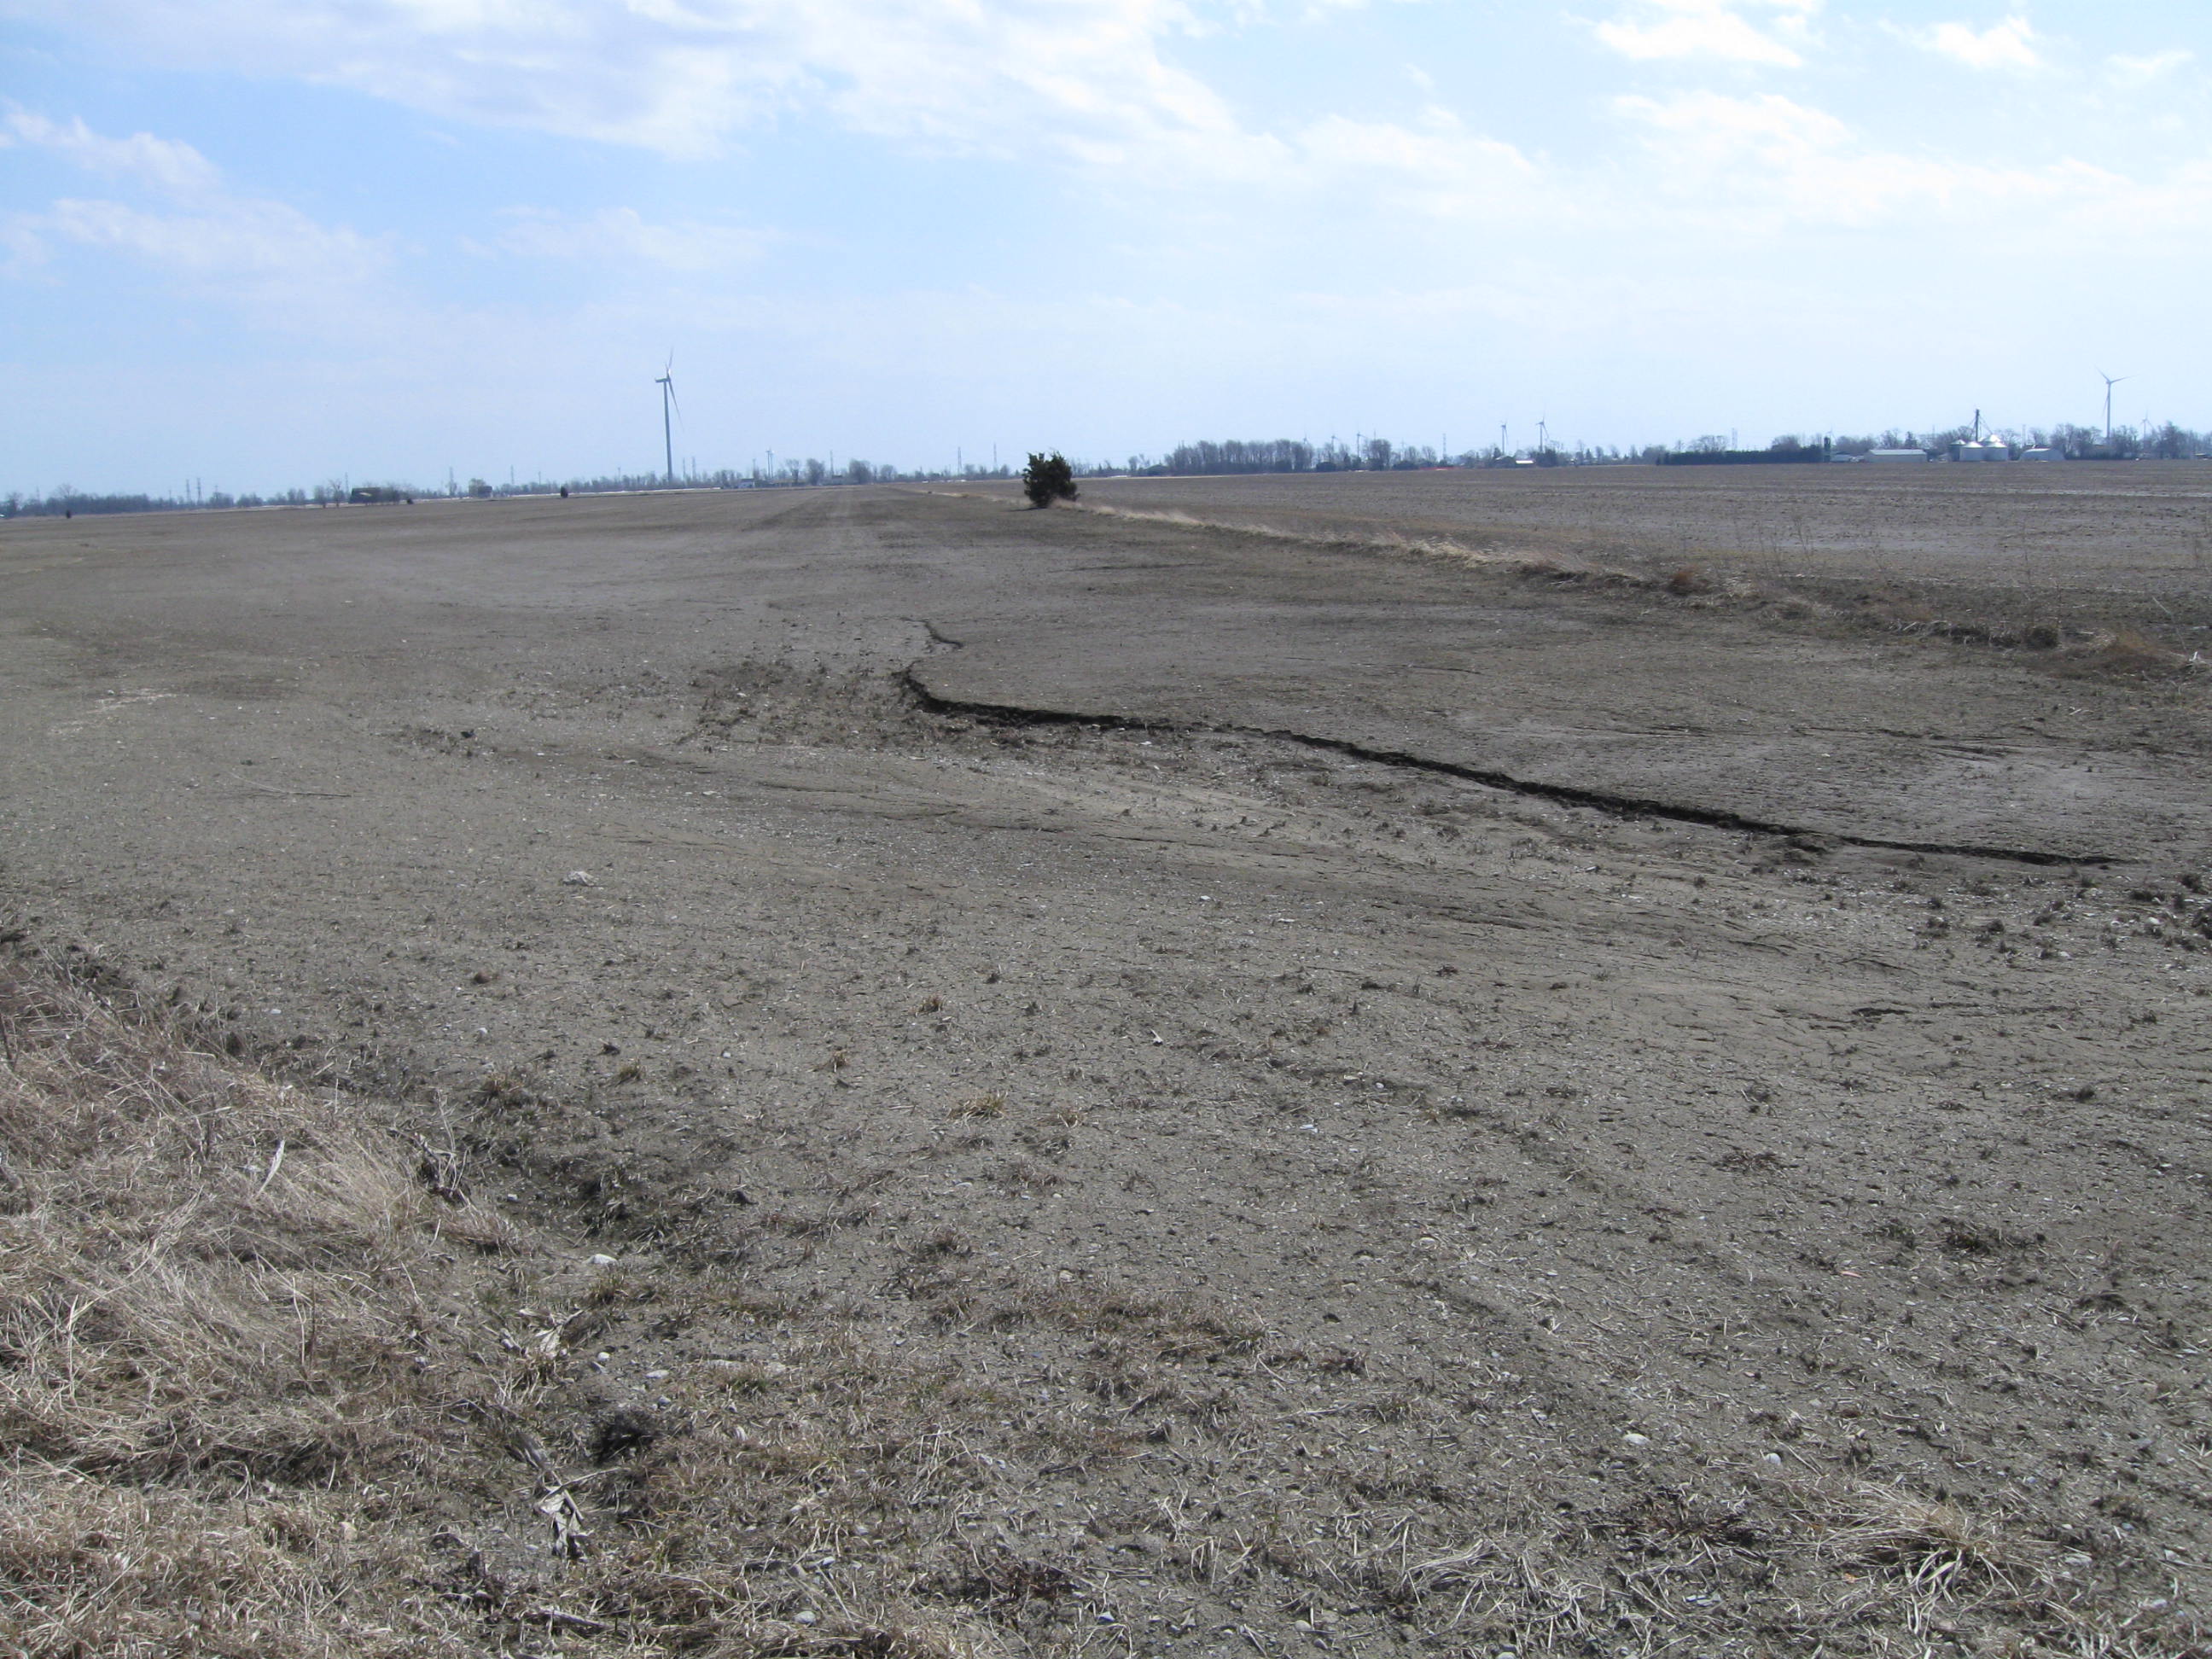 Champ après la récolte dans lequel on observe une accumulation de sol et de débris de culture à l’extrémité basse.